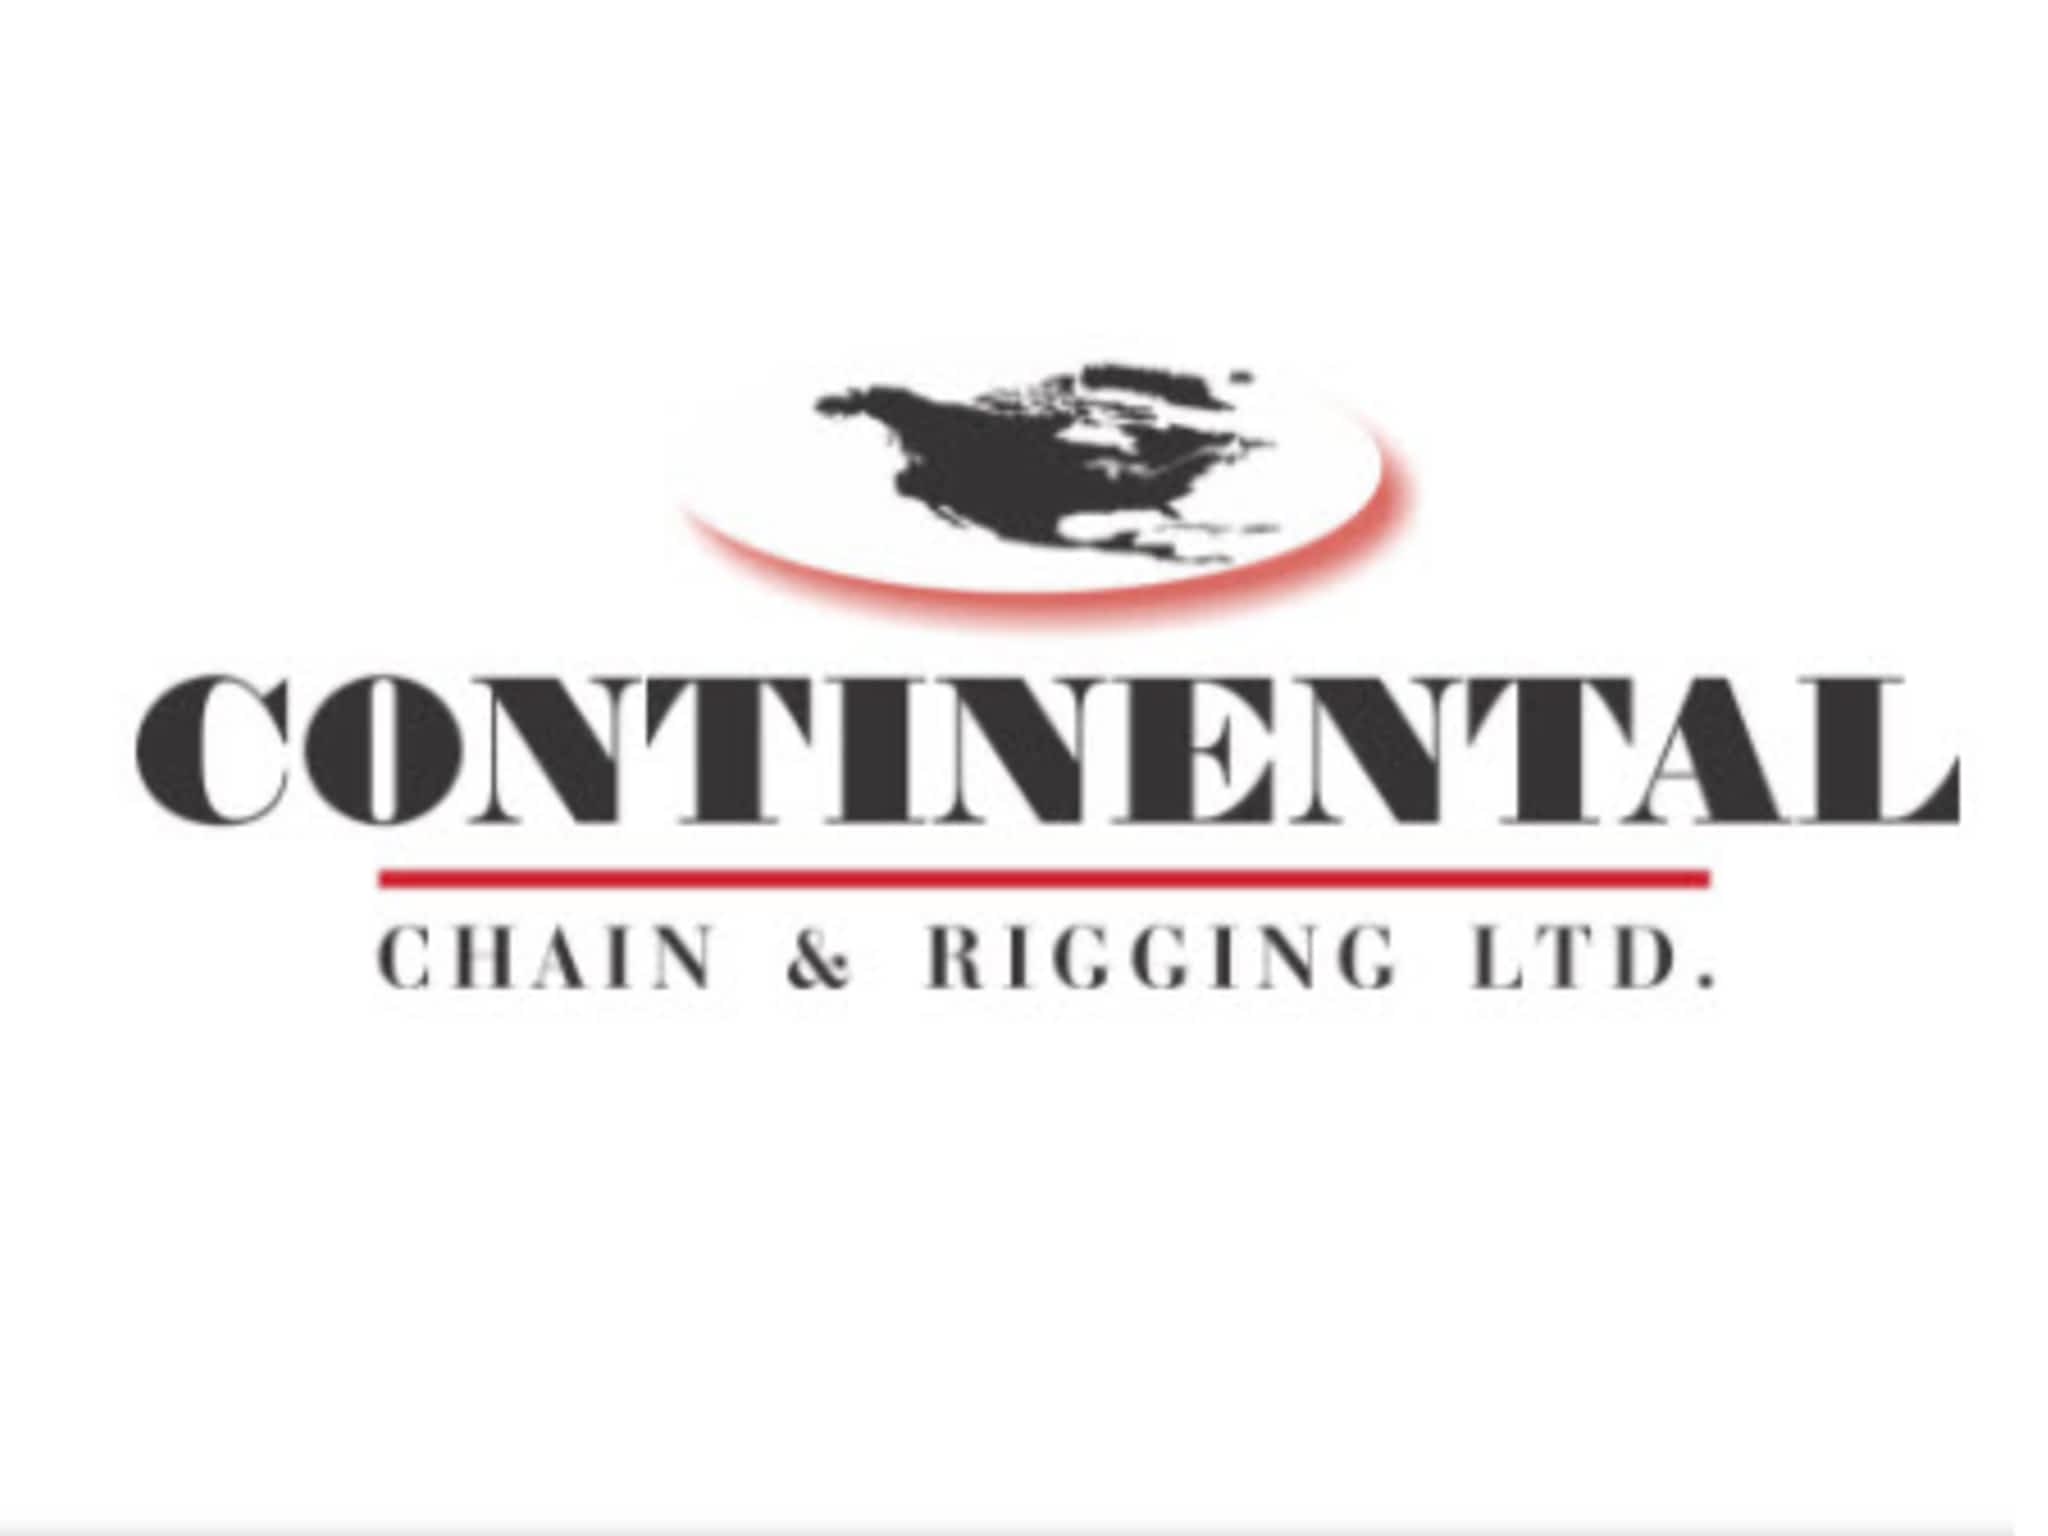 photo Continental Chain & Rigging Ltd.